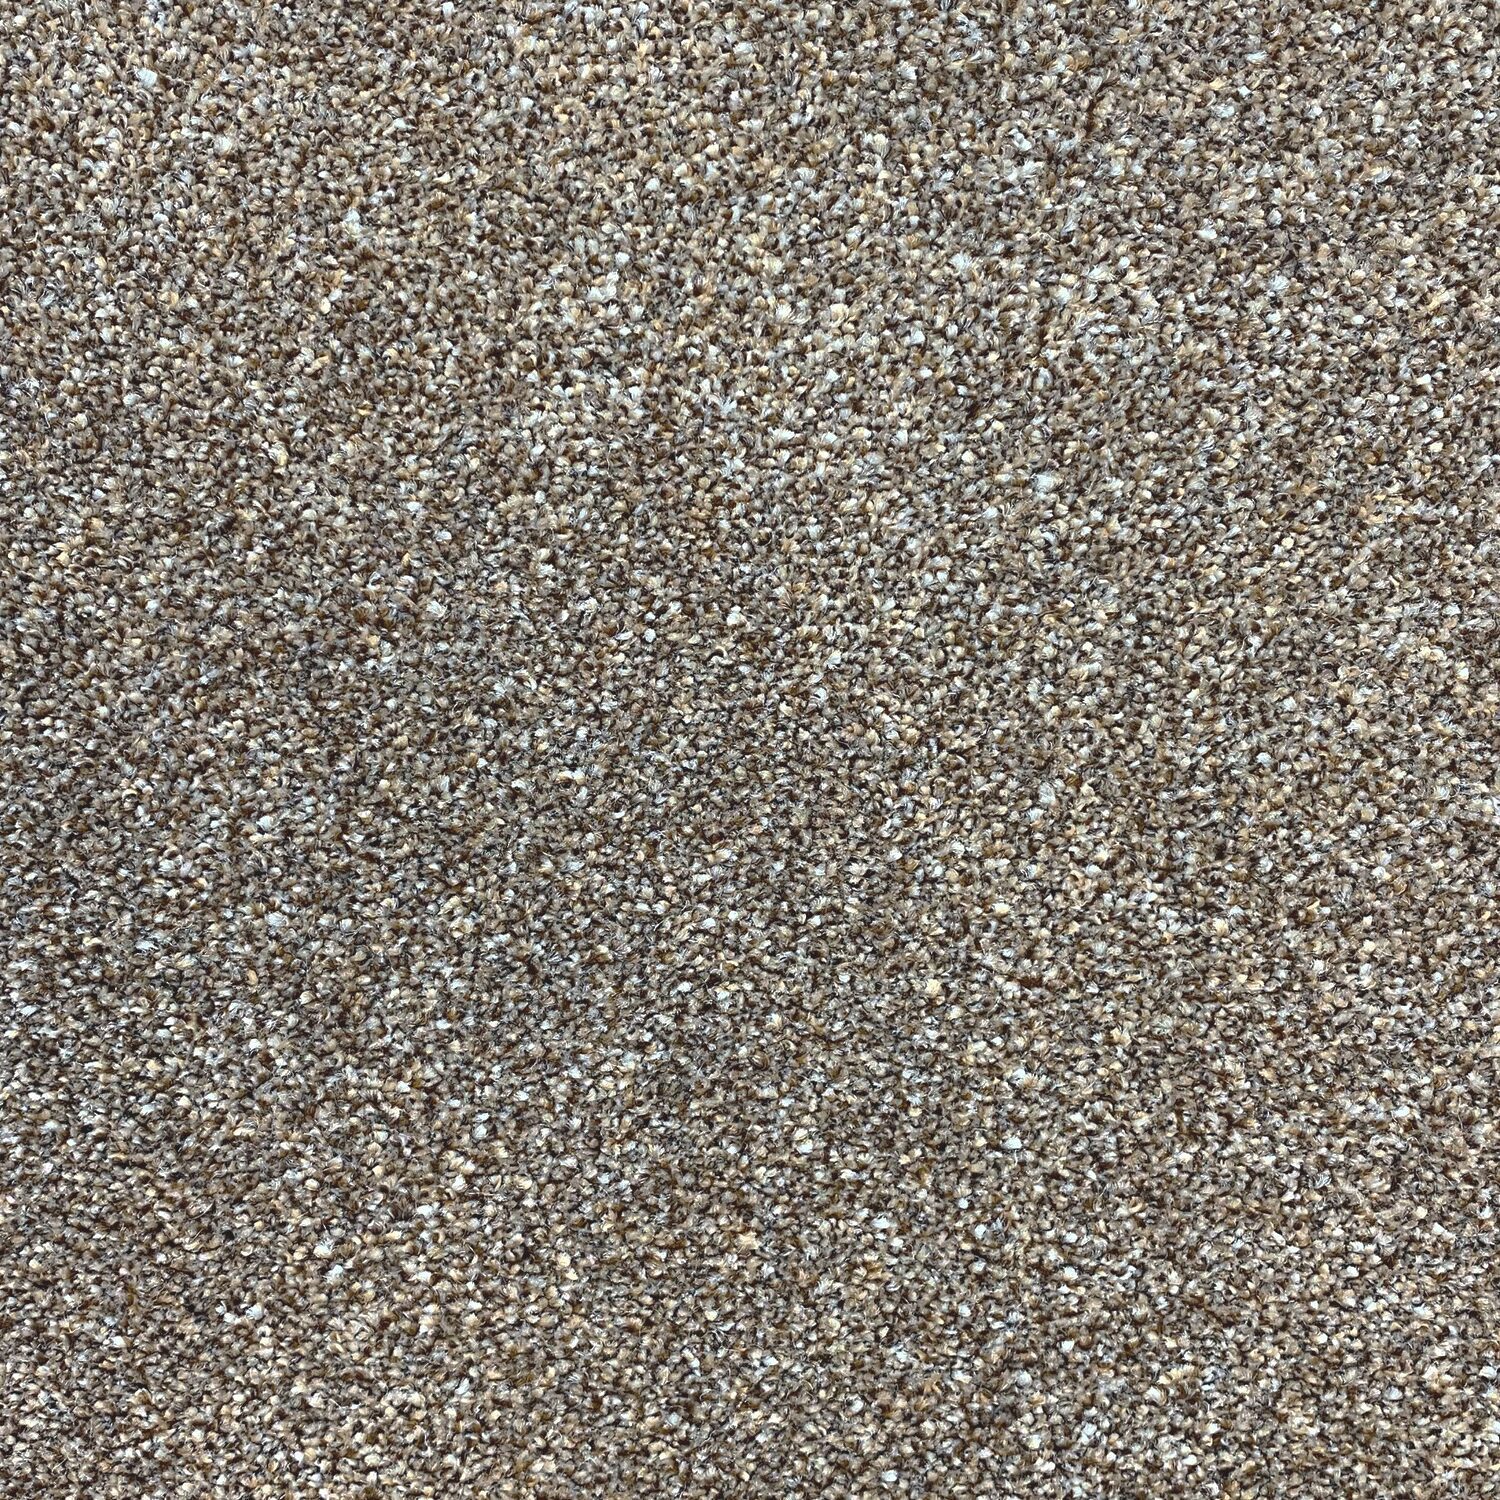 Carpet name: Smart Textures Griege